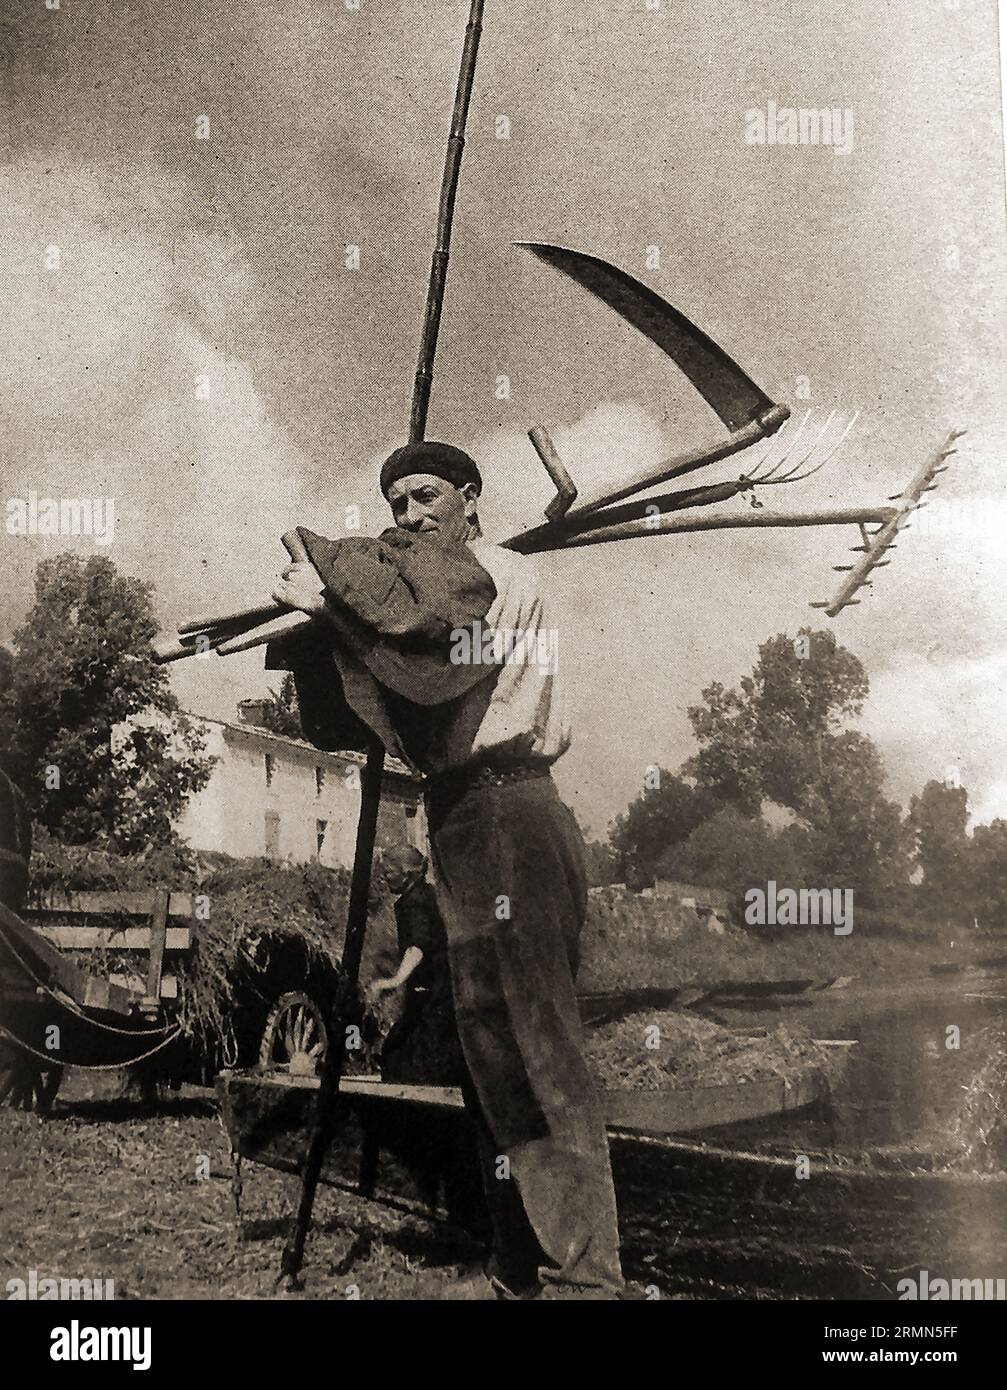 Frankreich 1939 - Ein Schilfschneider in Poitou - Frankreich 1939 - UN Coupeur de roseaux en Poitou Stockfoto